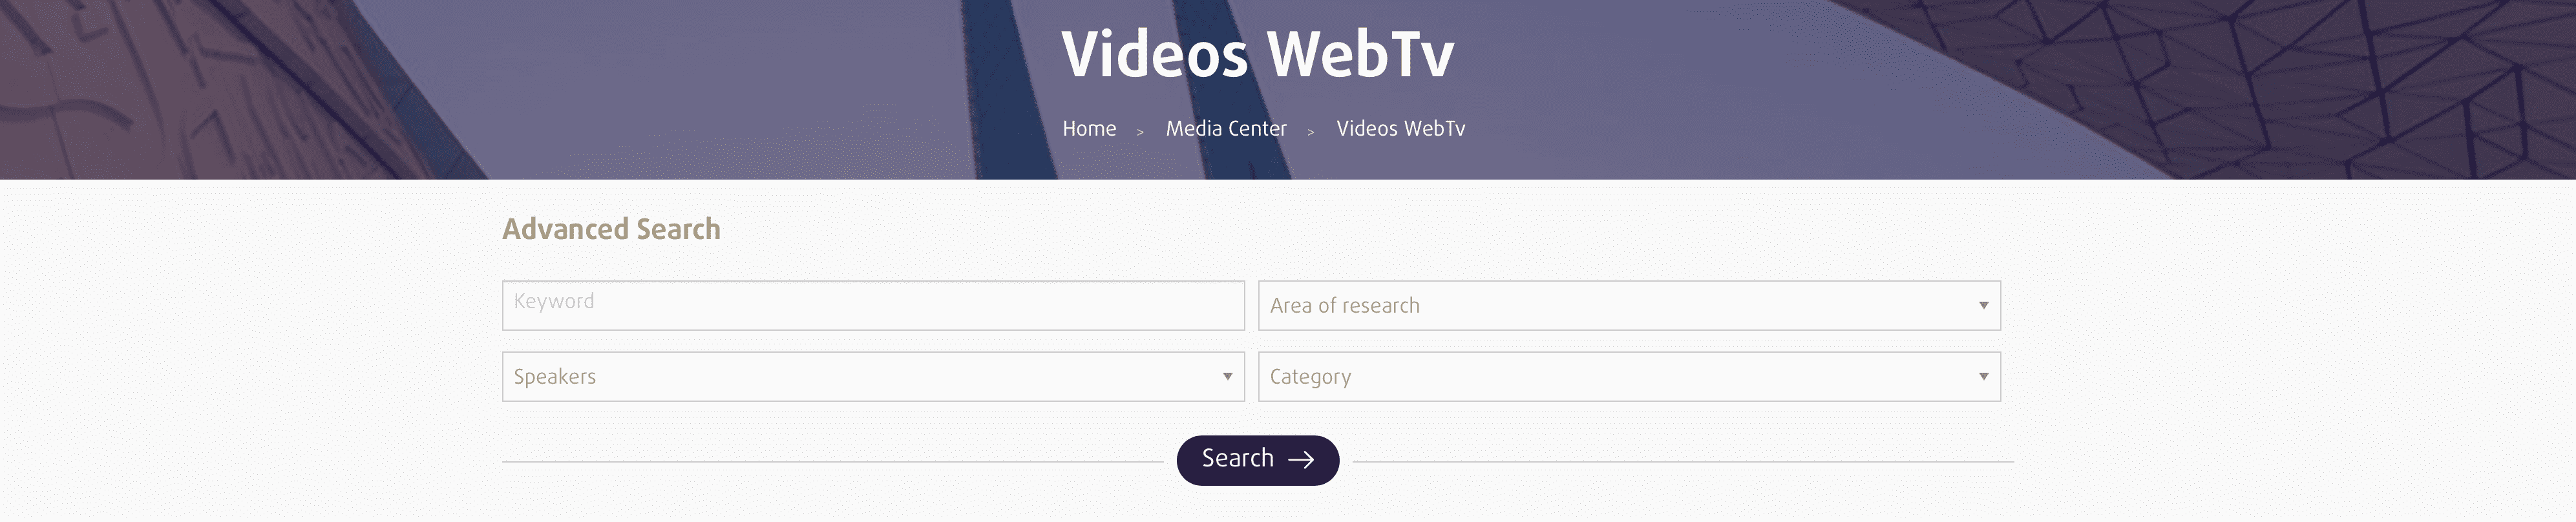 Videos WebTV